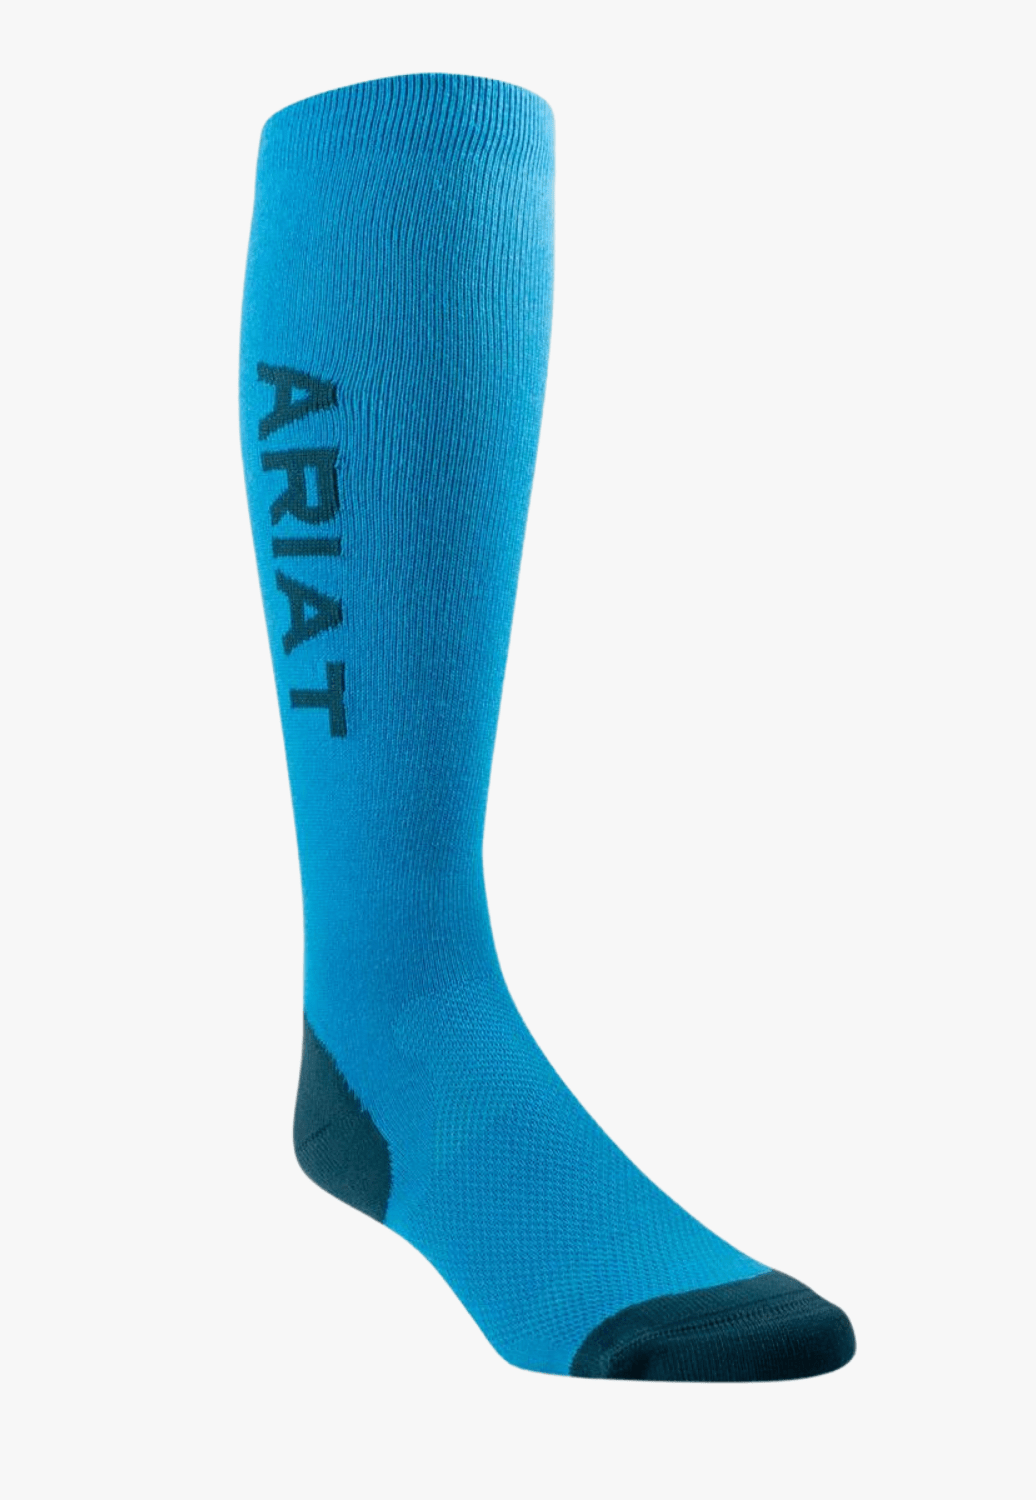 Ariat ACCESSORIES-Socks Blue/Green Ariat Uni Ariattek Essential Socks